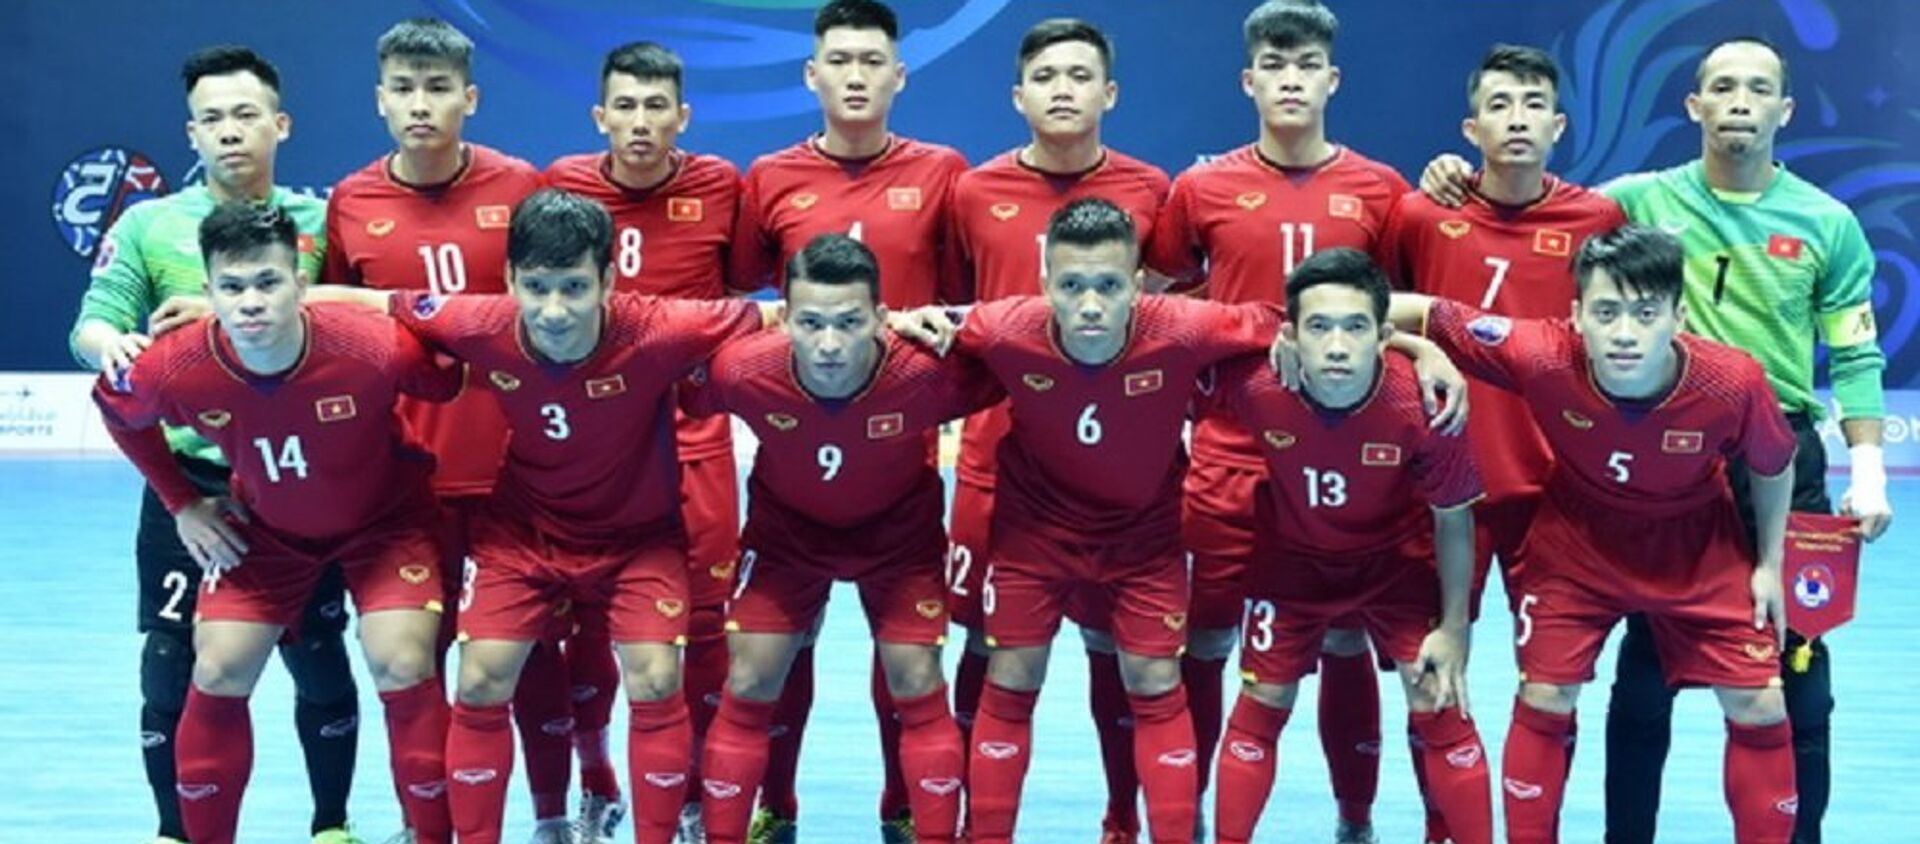 Đội tuyển Việt Nam càng chơi càng hay và giành quyền vào tứ kết giải vô địch châu Á 2018. - Sputnik Việt Nam, 1920, 06.02.2018